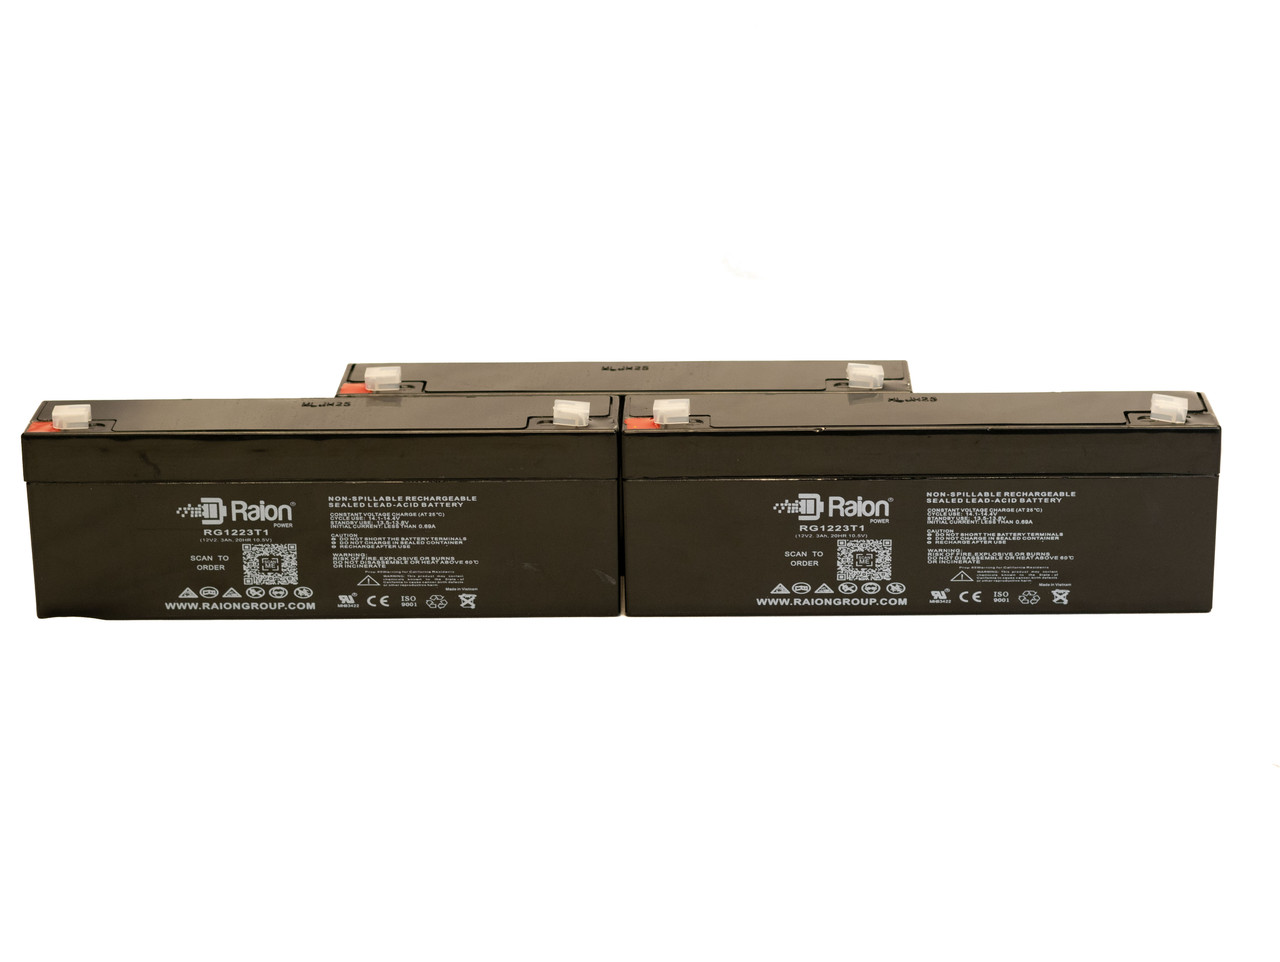 Raion Power 12V 2.3Ah RG1223T1 Replacement Medical Battery for Nellcor Puritan-bennett N185 Pulse Oximeter - 3 Pack